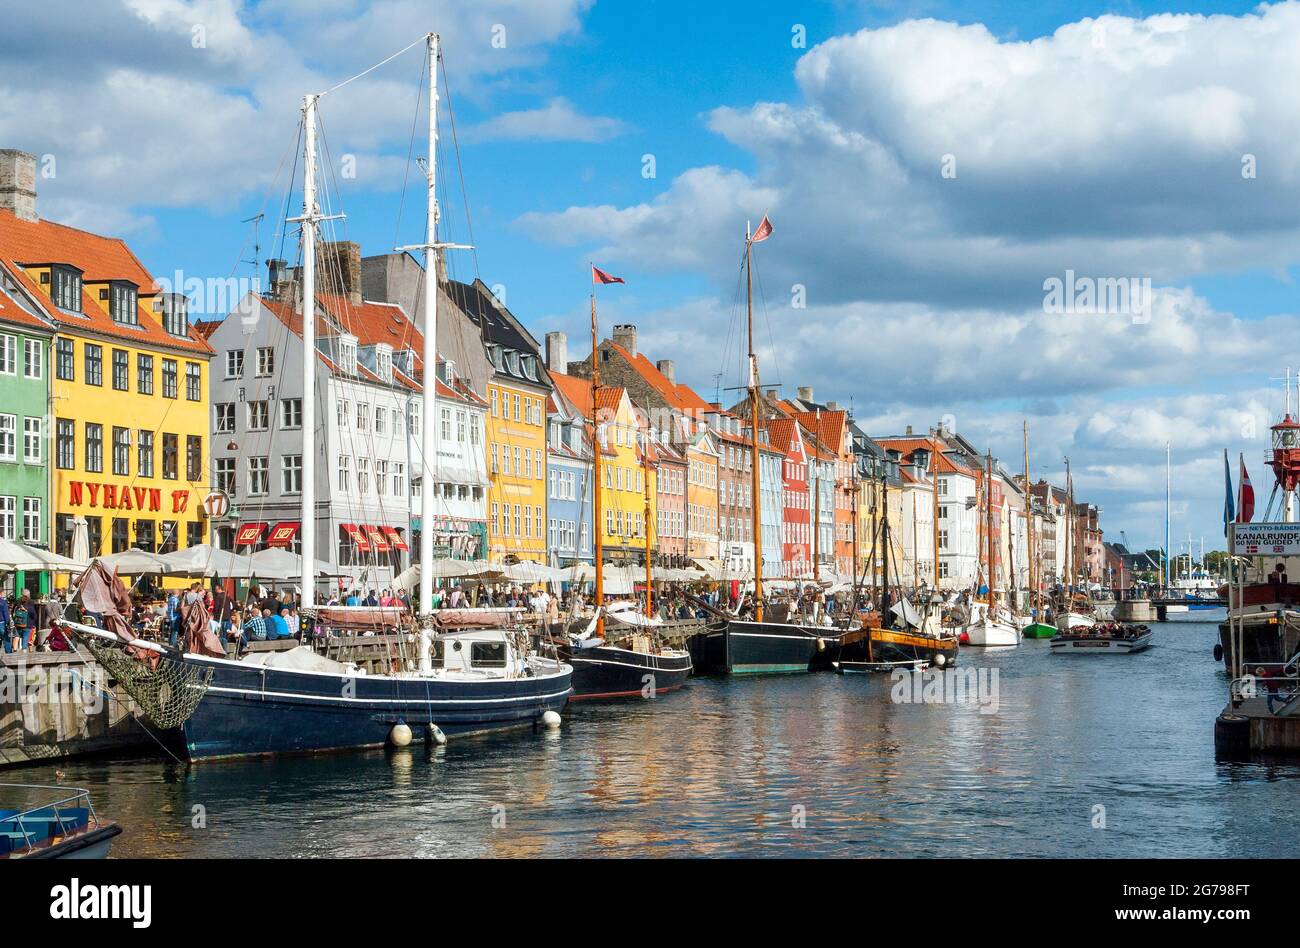 Danemark, Île de la Zélande / Sjaelland, Copenhague, Nyhavn, New Harbour à Copenhague, maisons à pignons colorées le long du canal, visite du port d'attraction touristique, quartier de divertissement touristique. Banque D'Images